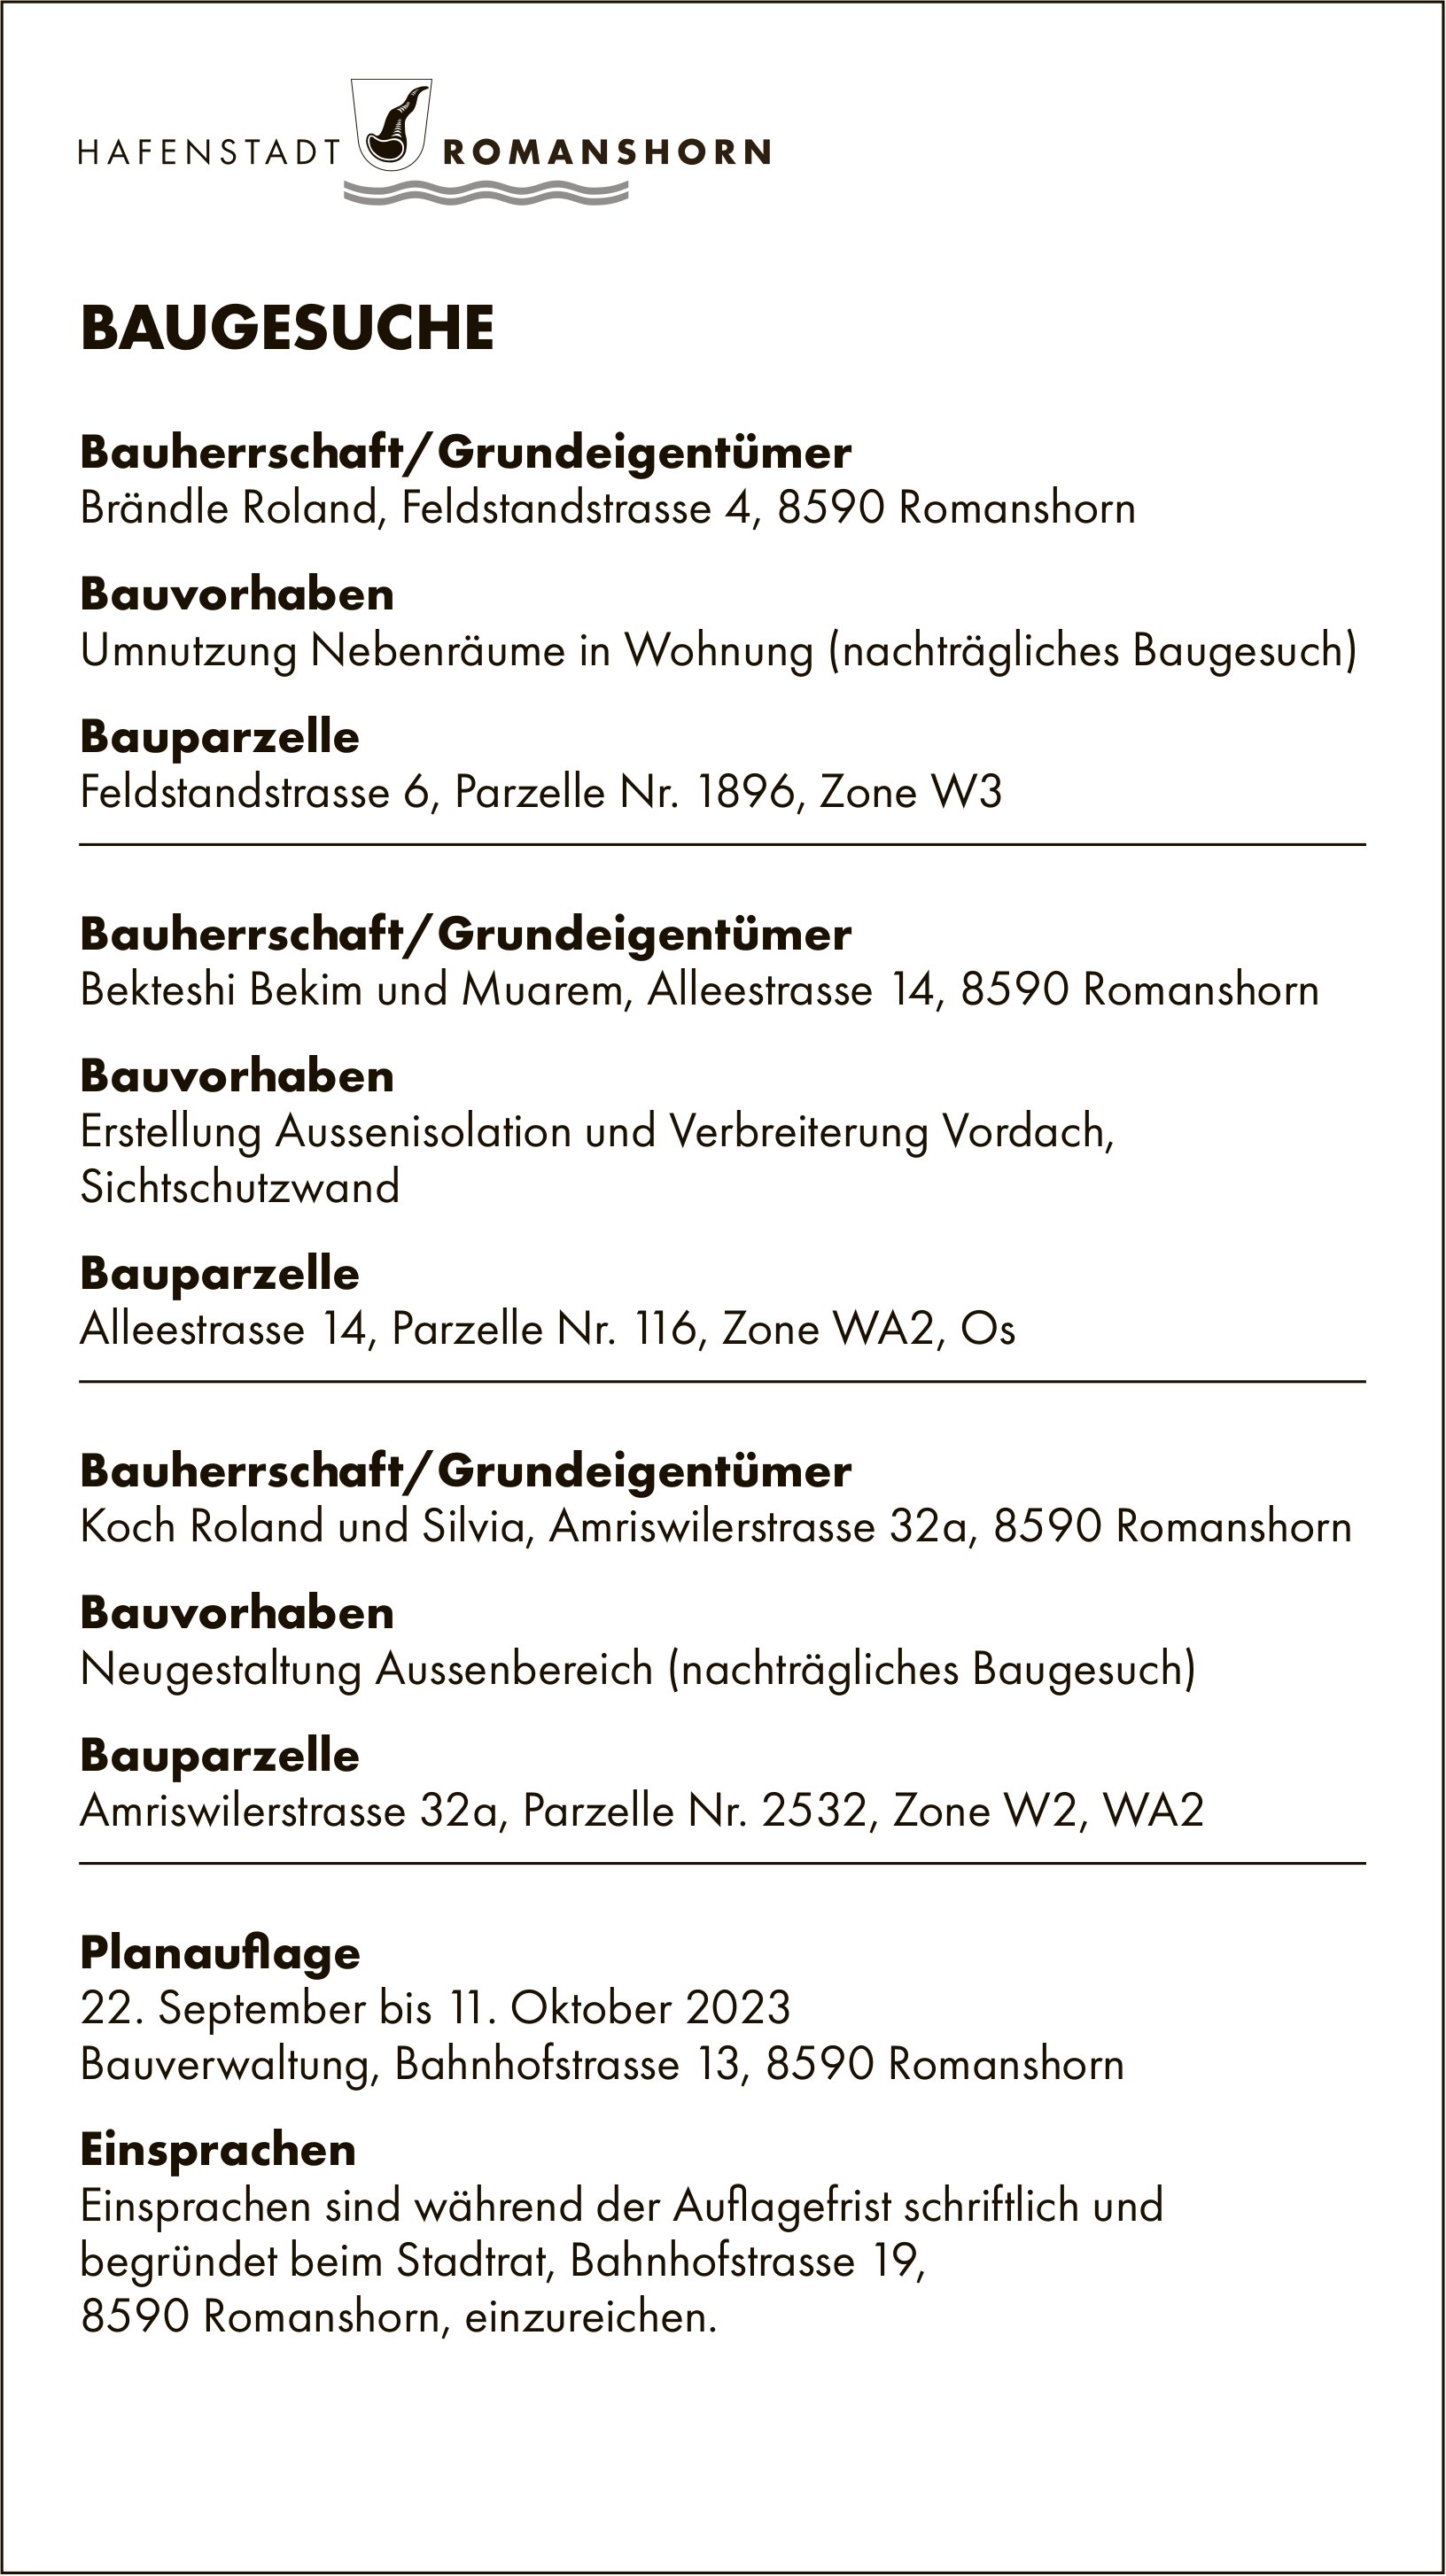 Baugesuche von 22. September bis 11. Oktober 2023, Romanshorn - Bauherrschaft/Grundeigentümer